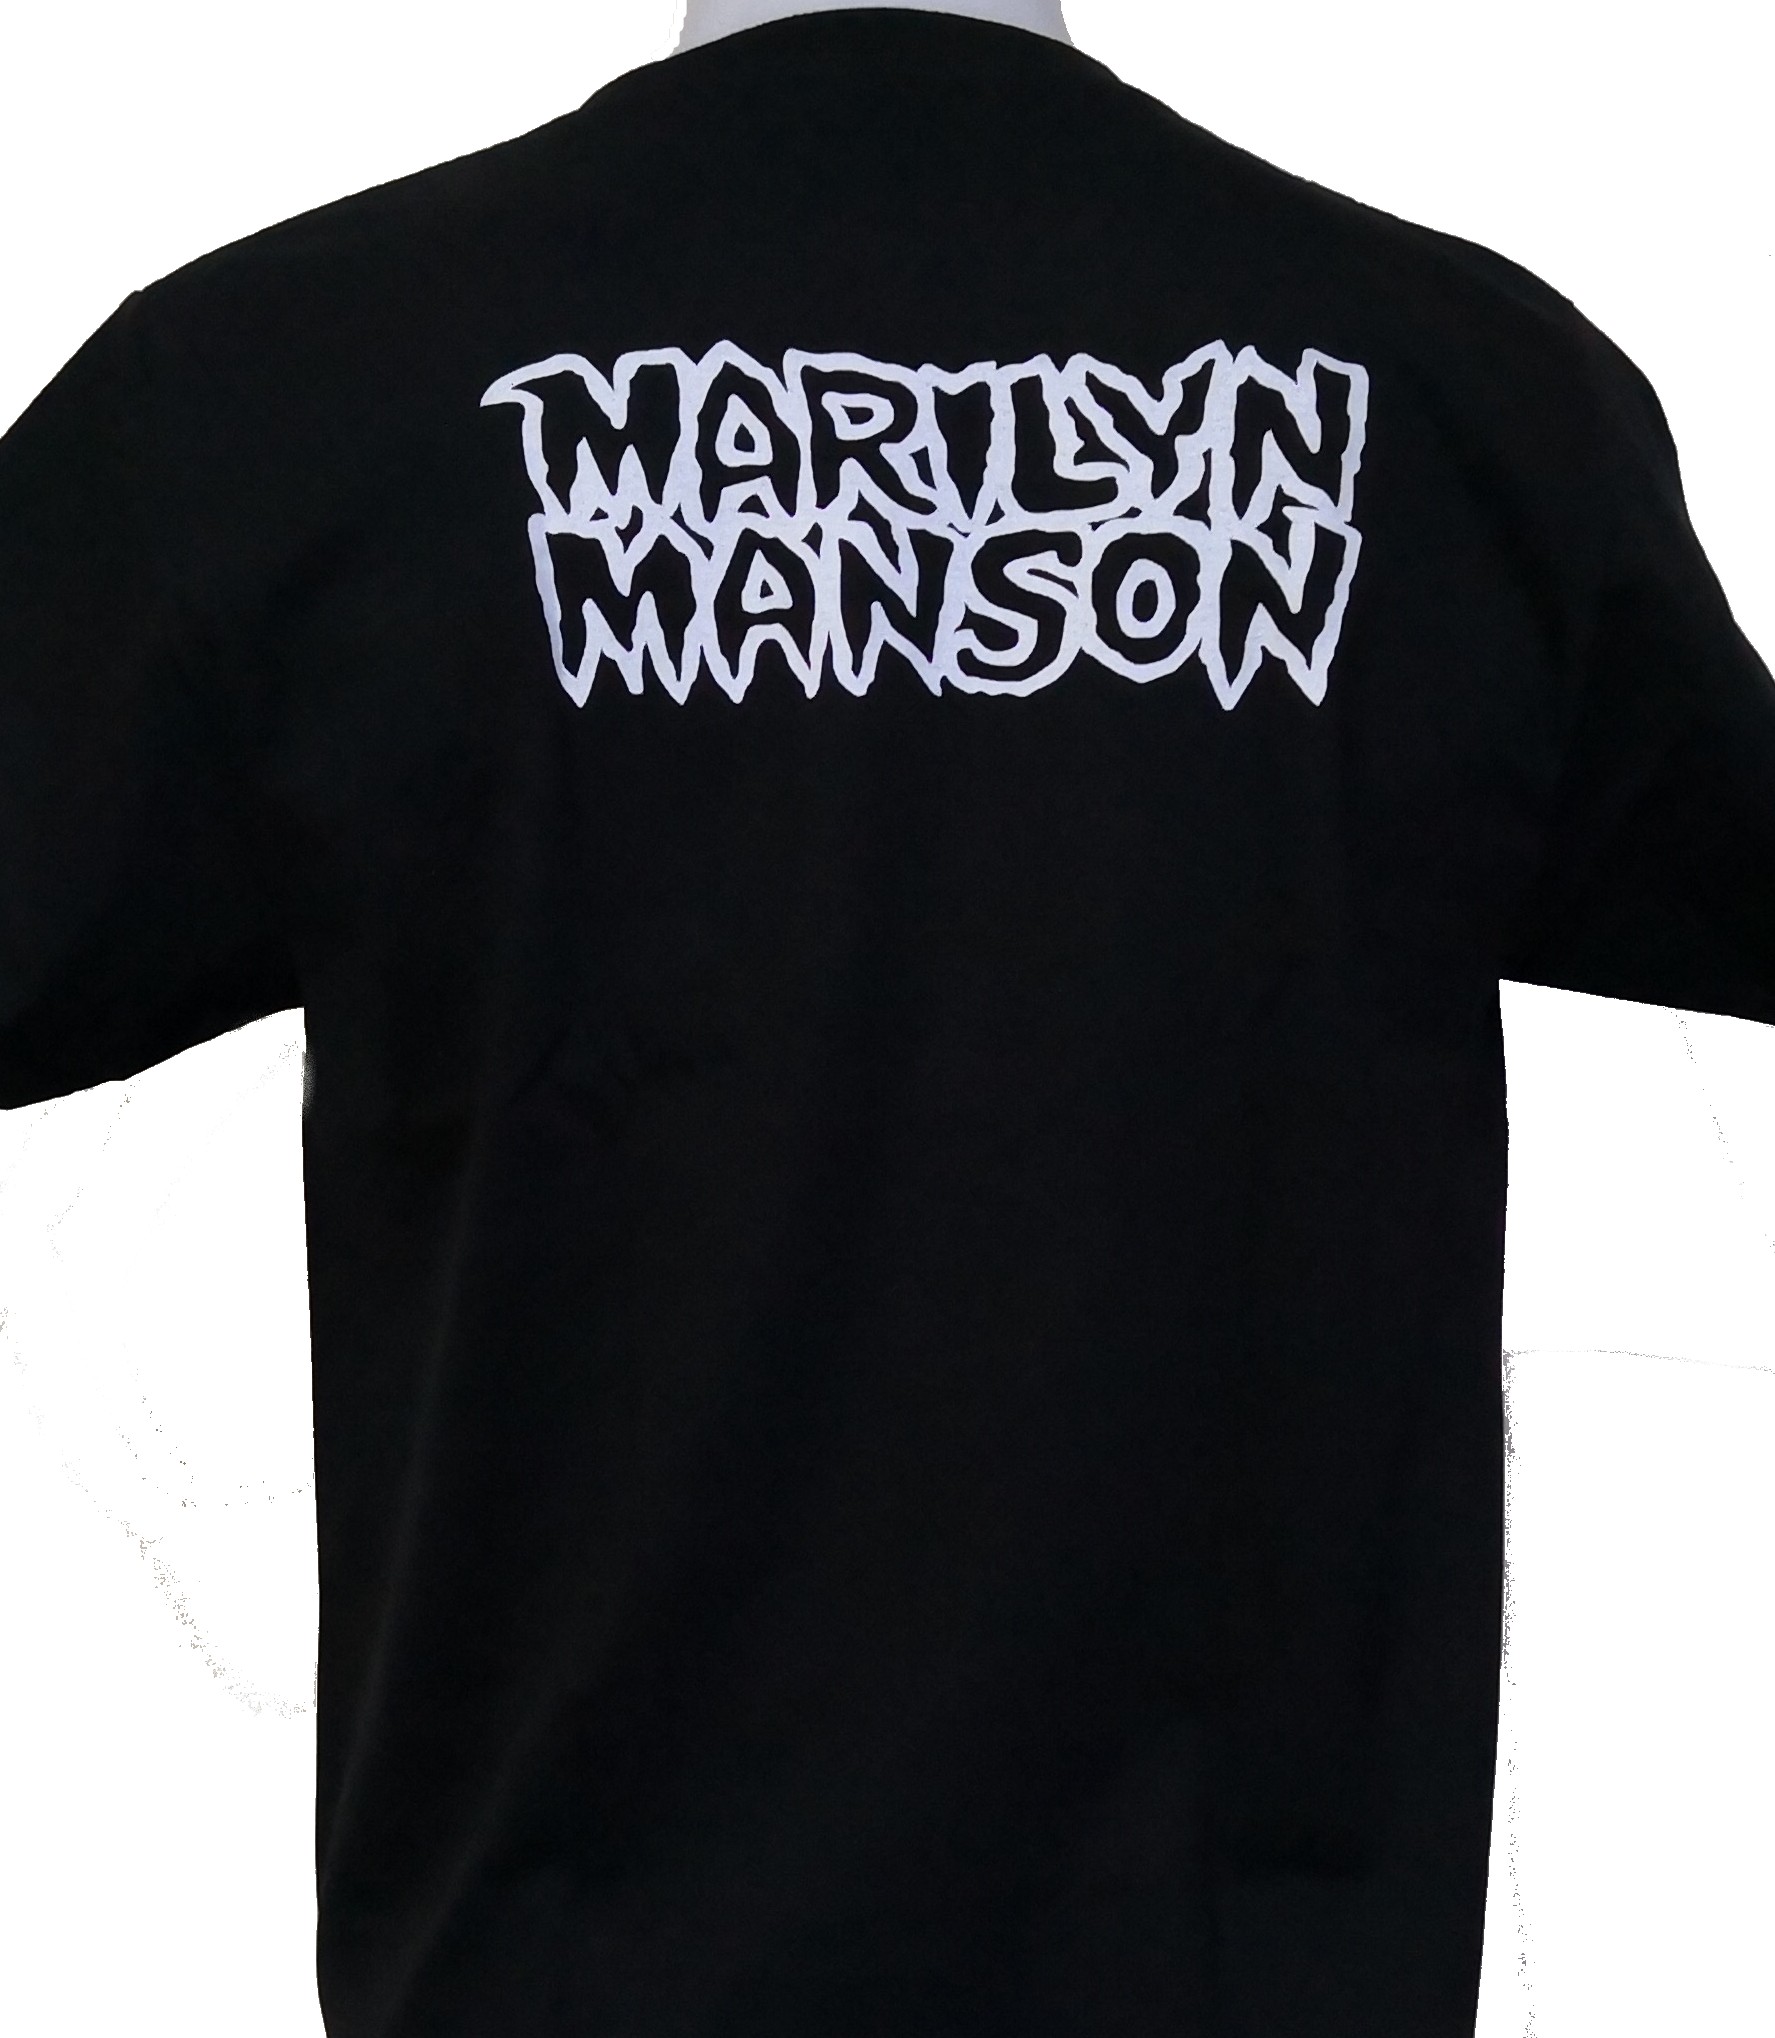 Marilyn Manson t-shirt size XL